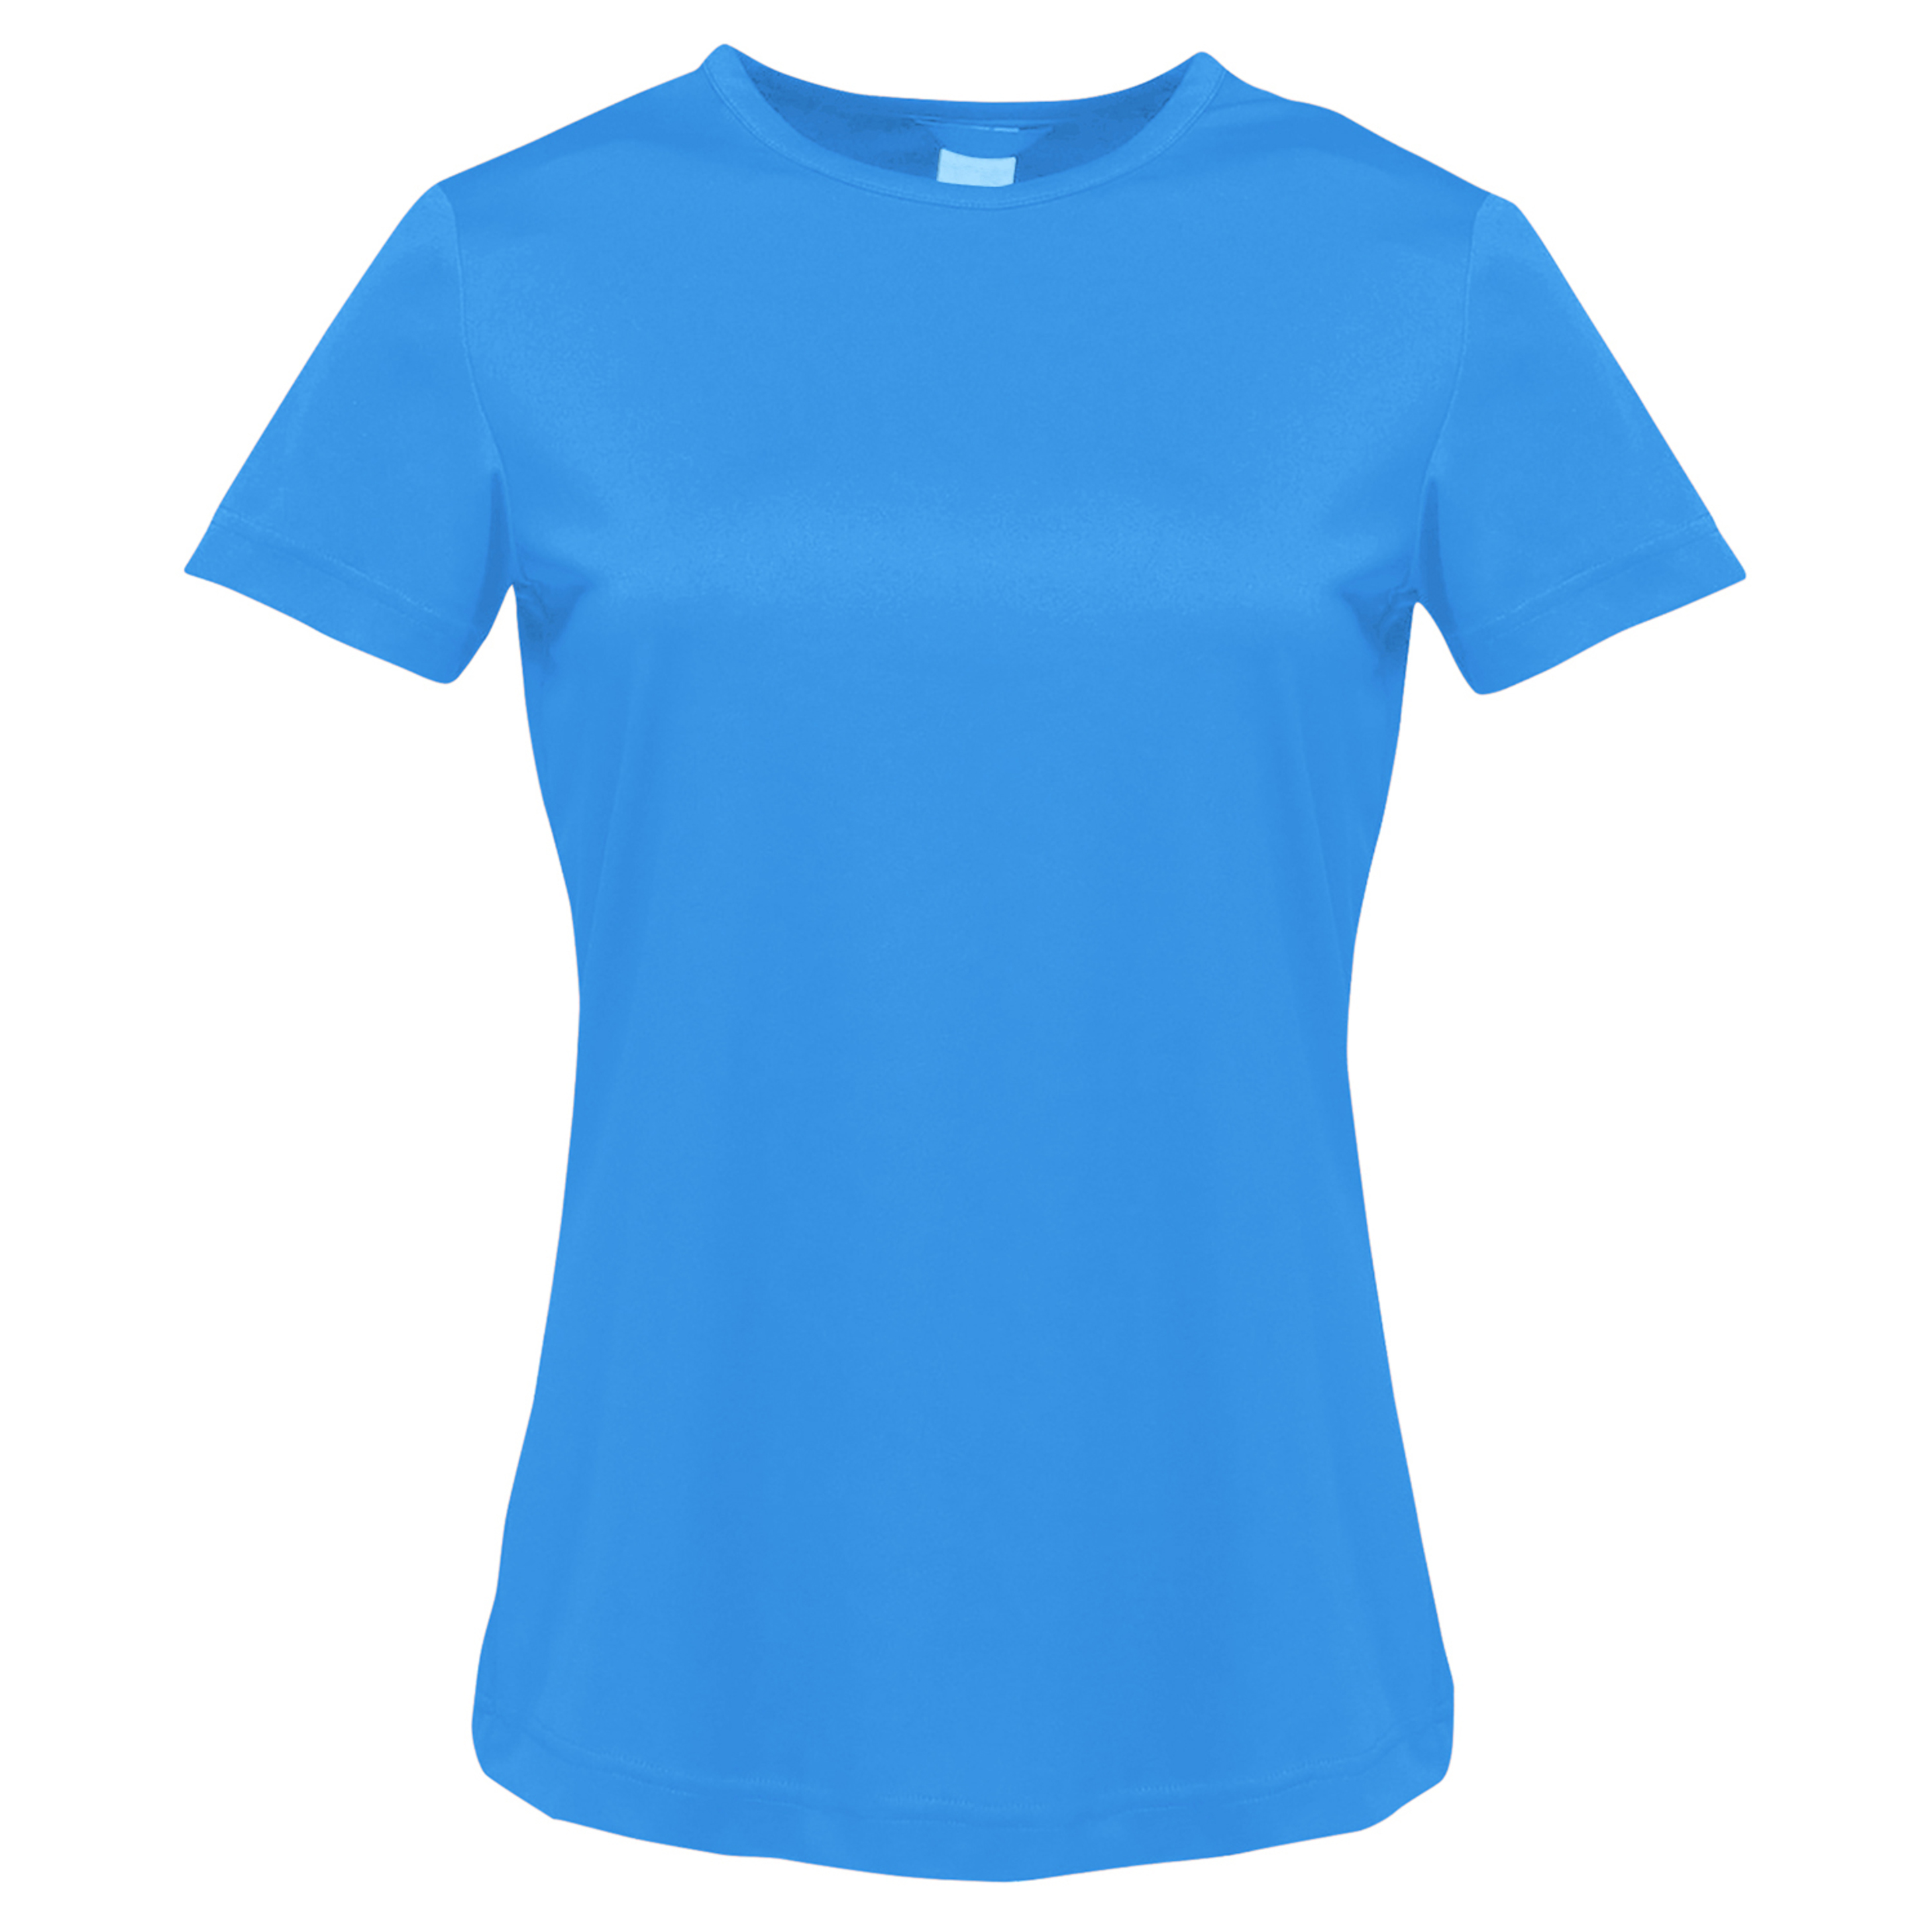 Camiseta Das Mulheres E Senhoras De Torino Regatta (Oxford Blue)